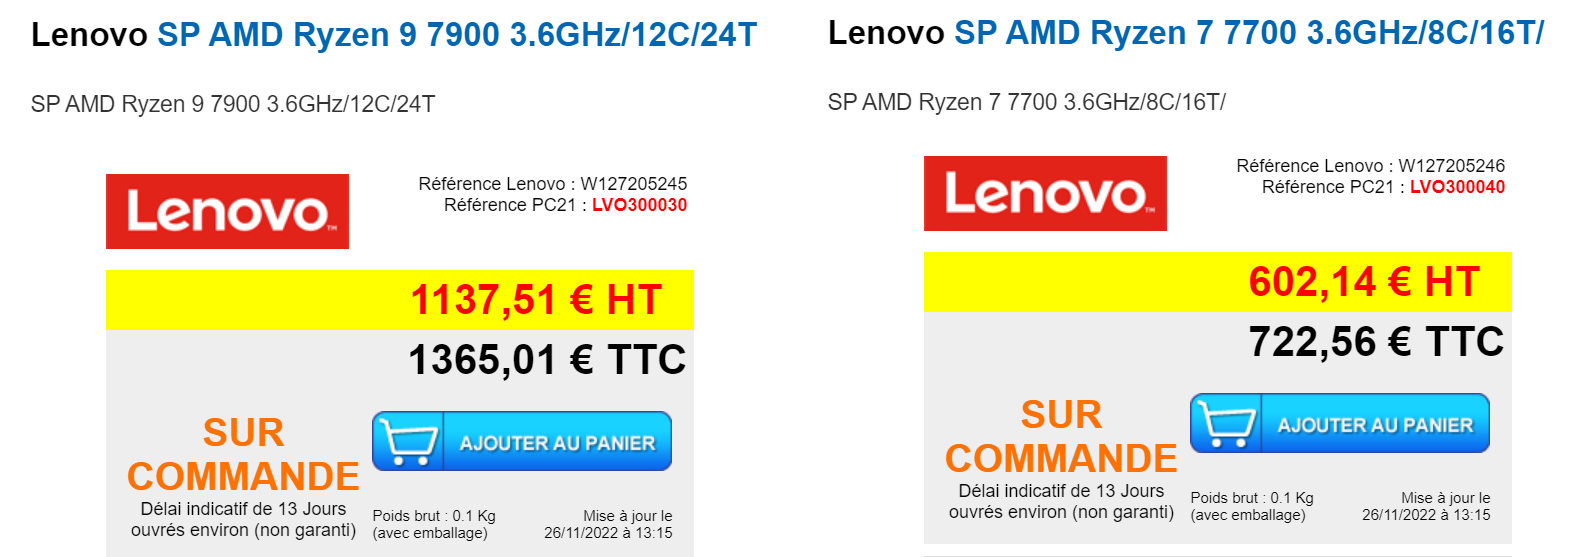 AMD-RYZEN-7900-7700-PC21FR.png